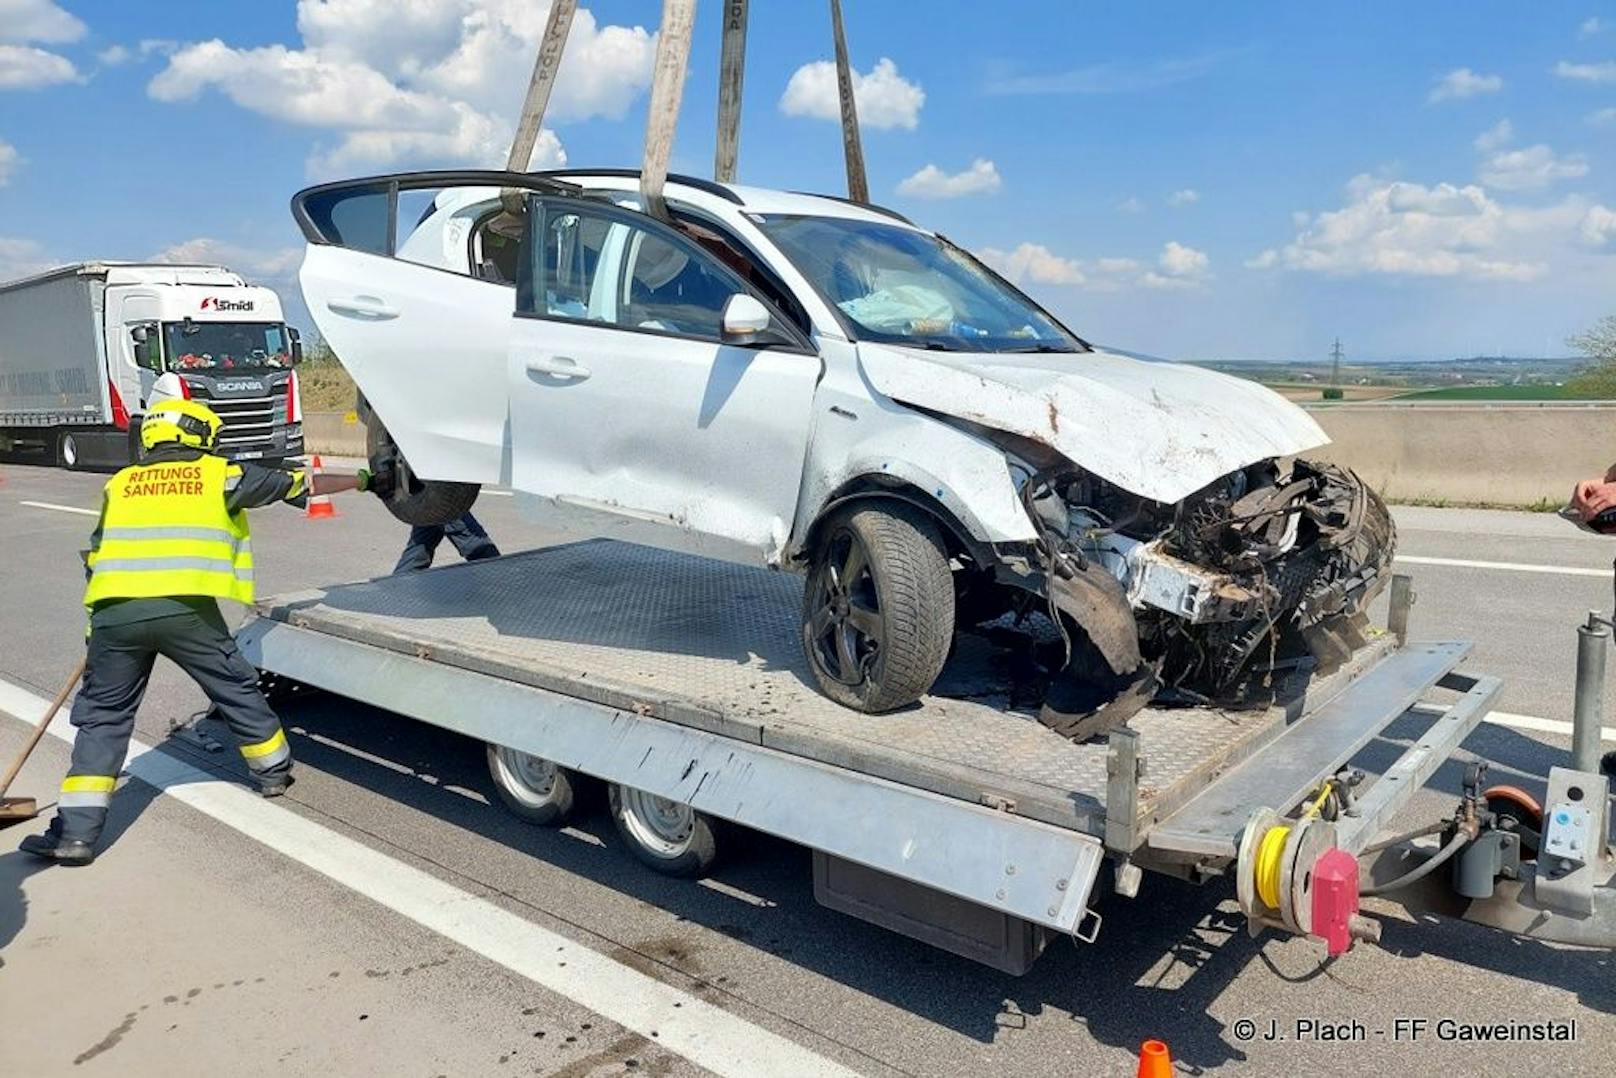 Spektakulärer Crash: Auto landete auf A5 auf Leitschiene